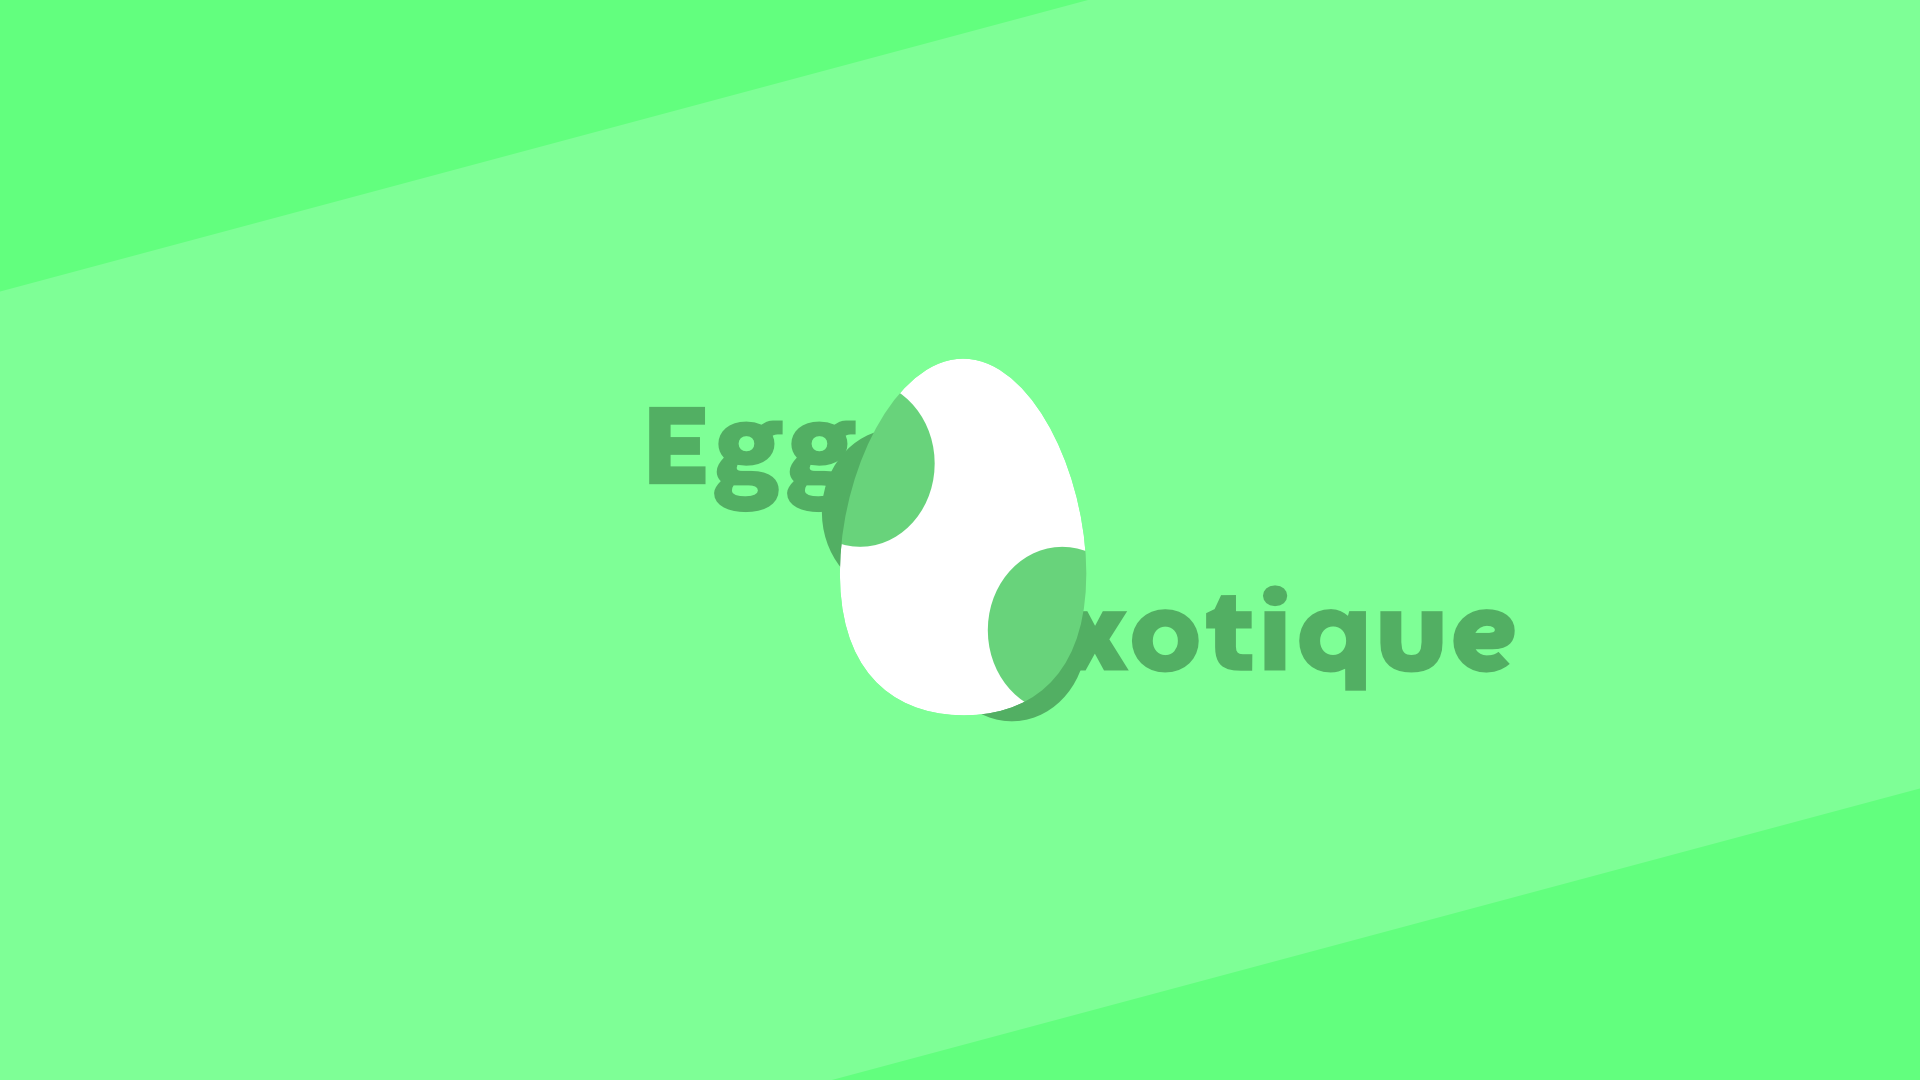 Egg-xotique 2